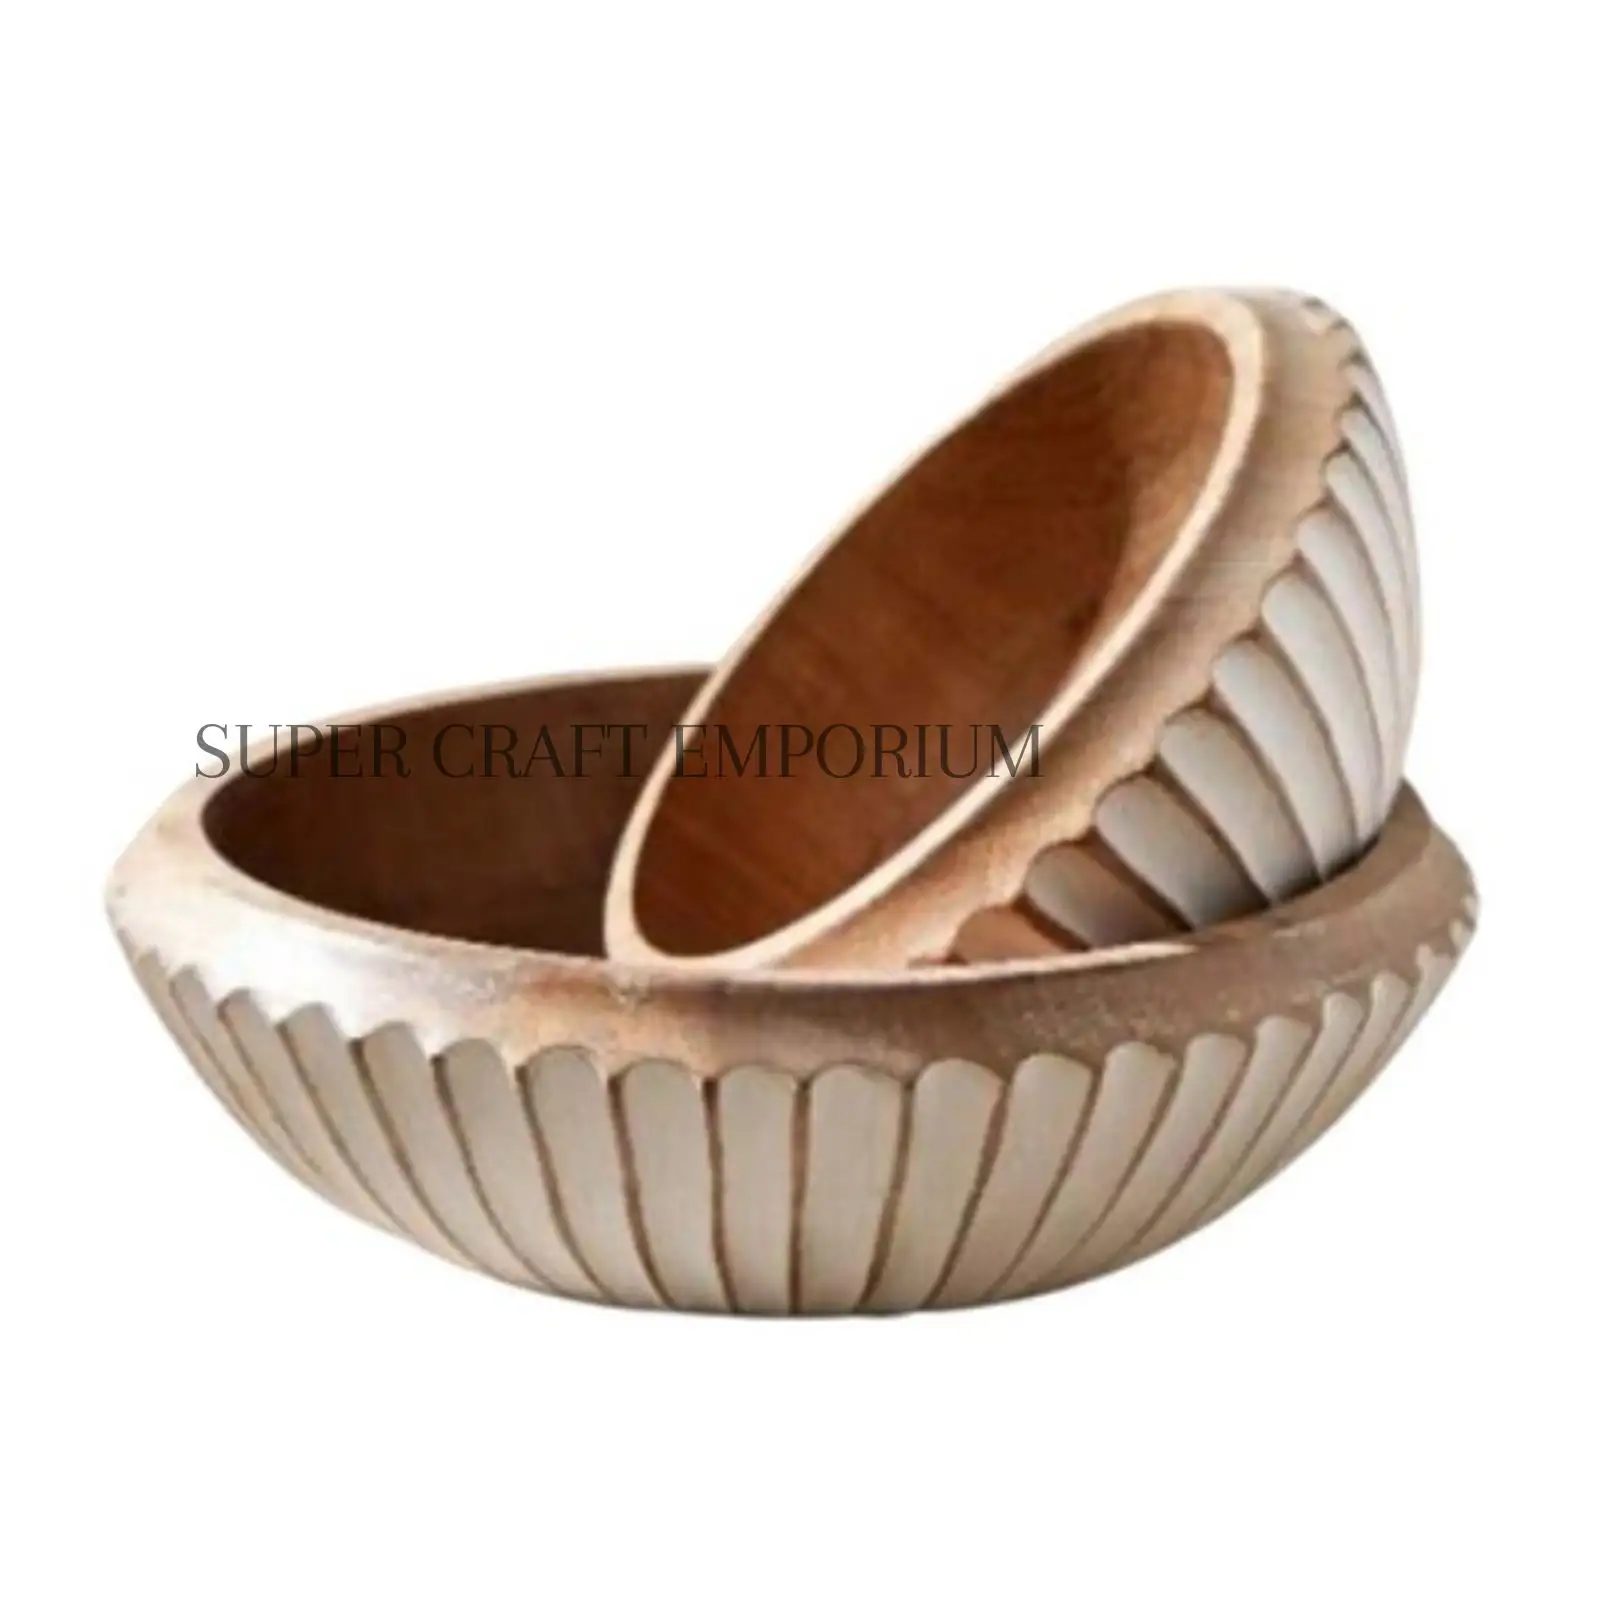 Venta caliente disponible Mango Wood Texture Bowl S/2 para uso Multiusos y con la mejor calidad